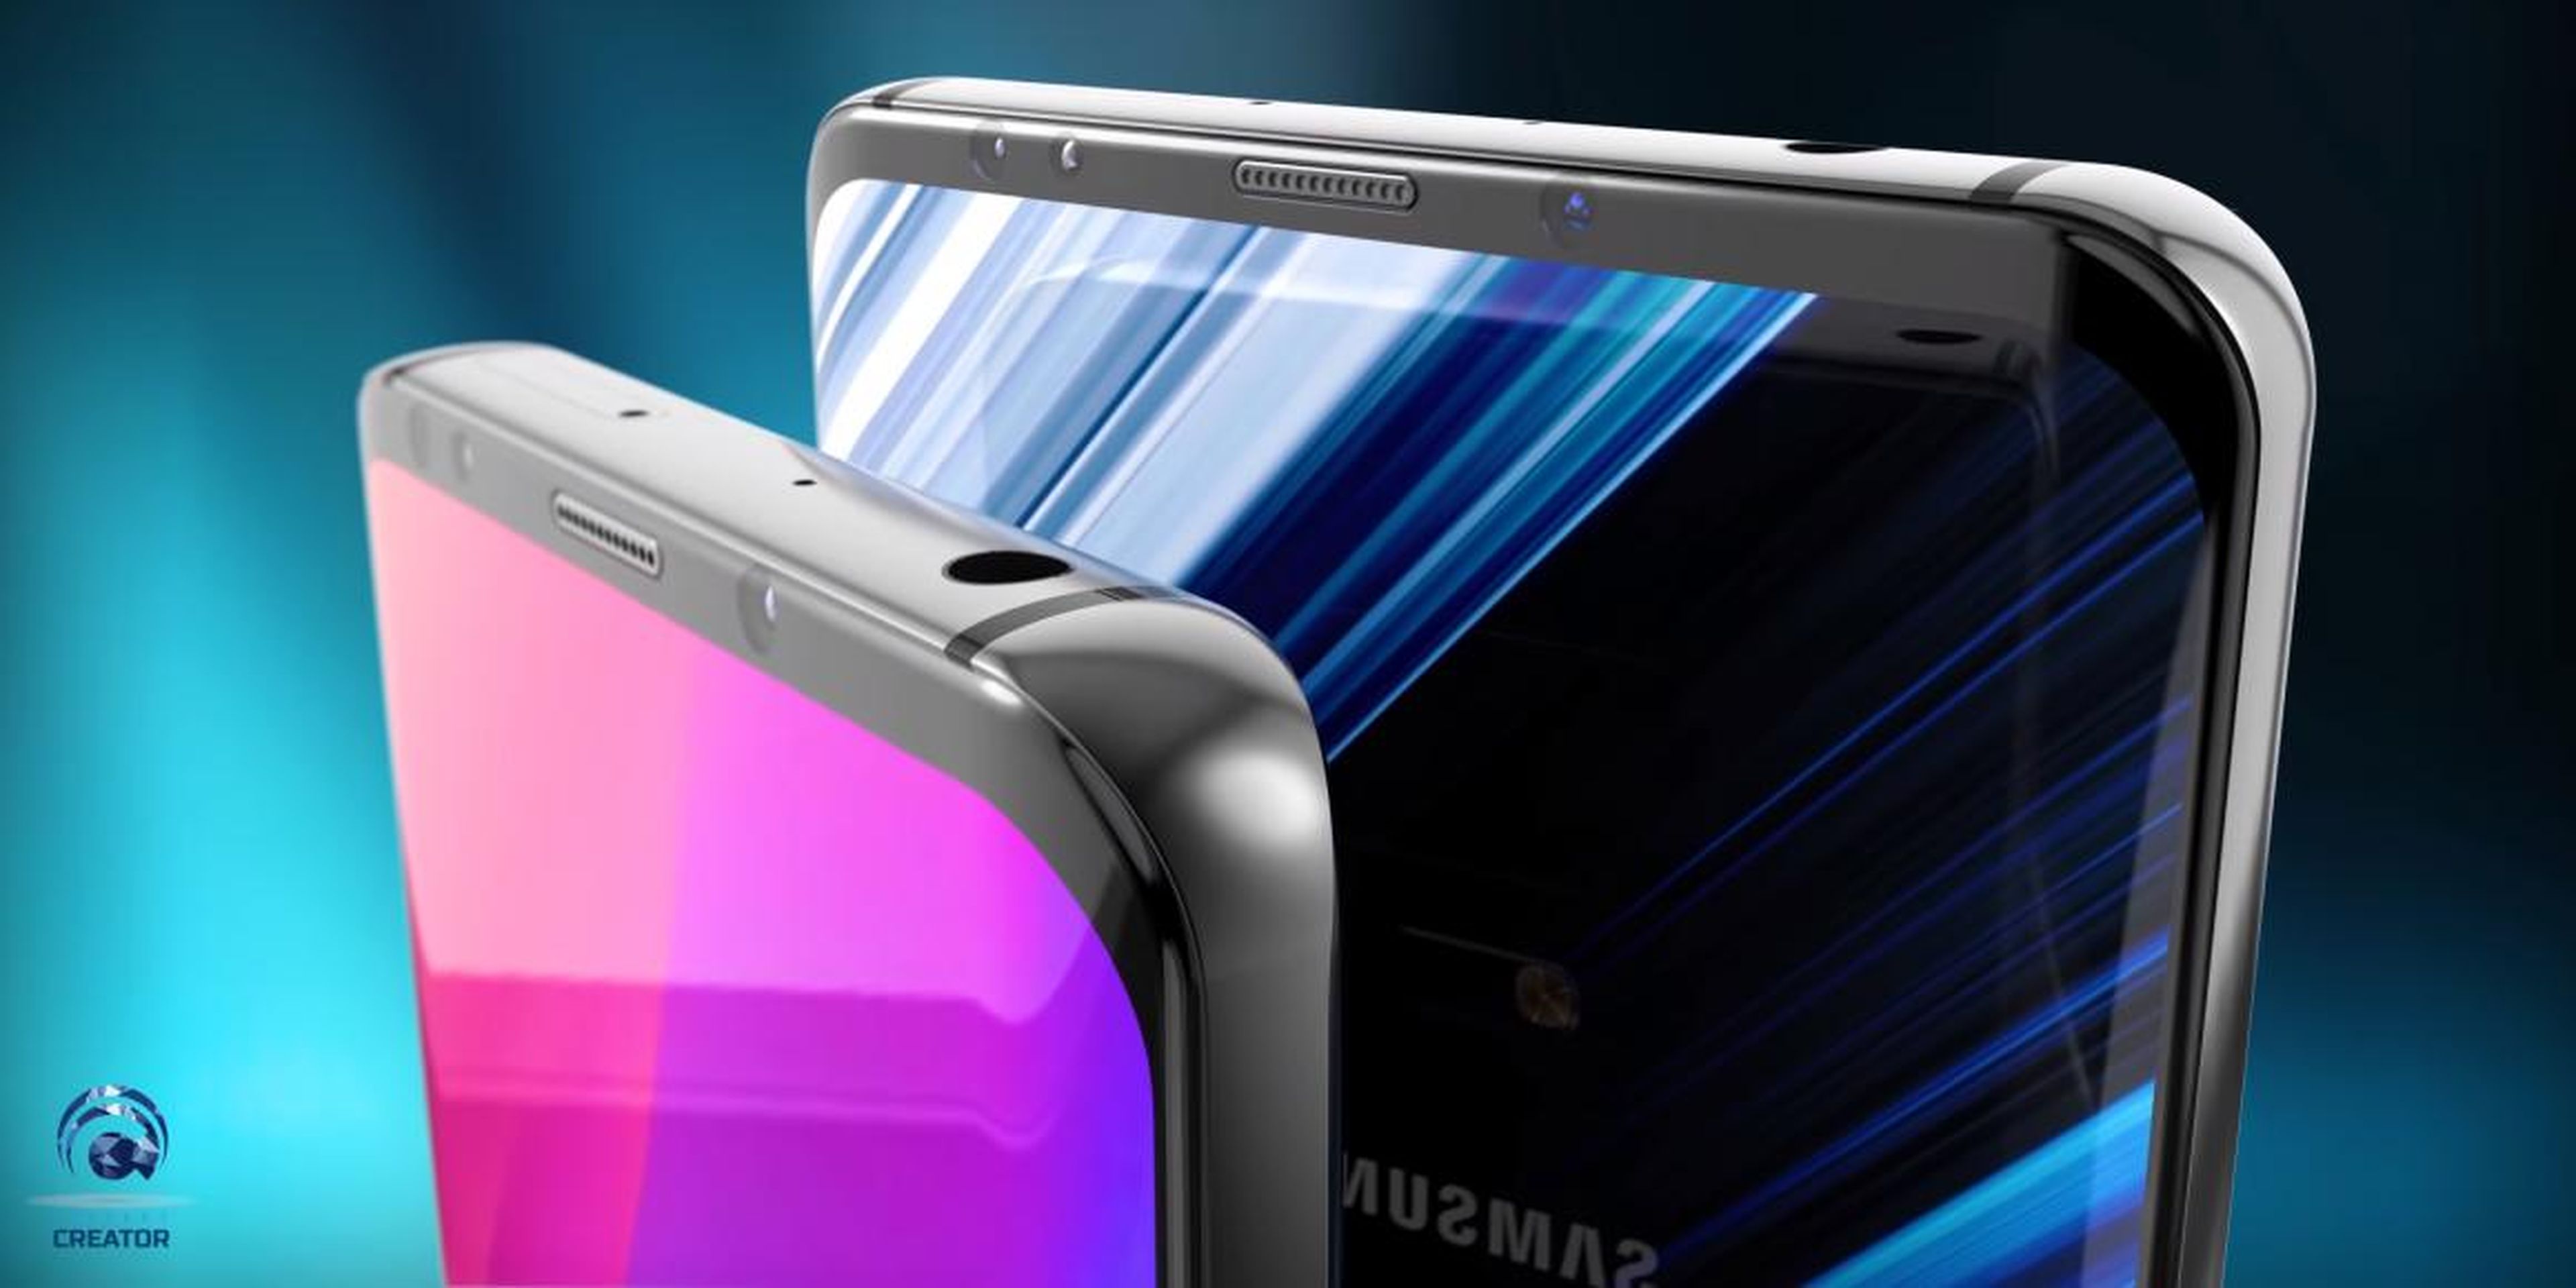 El próximo Samsung Galaxy S10 podría implicar un rediseño futurista